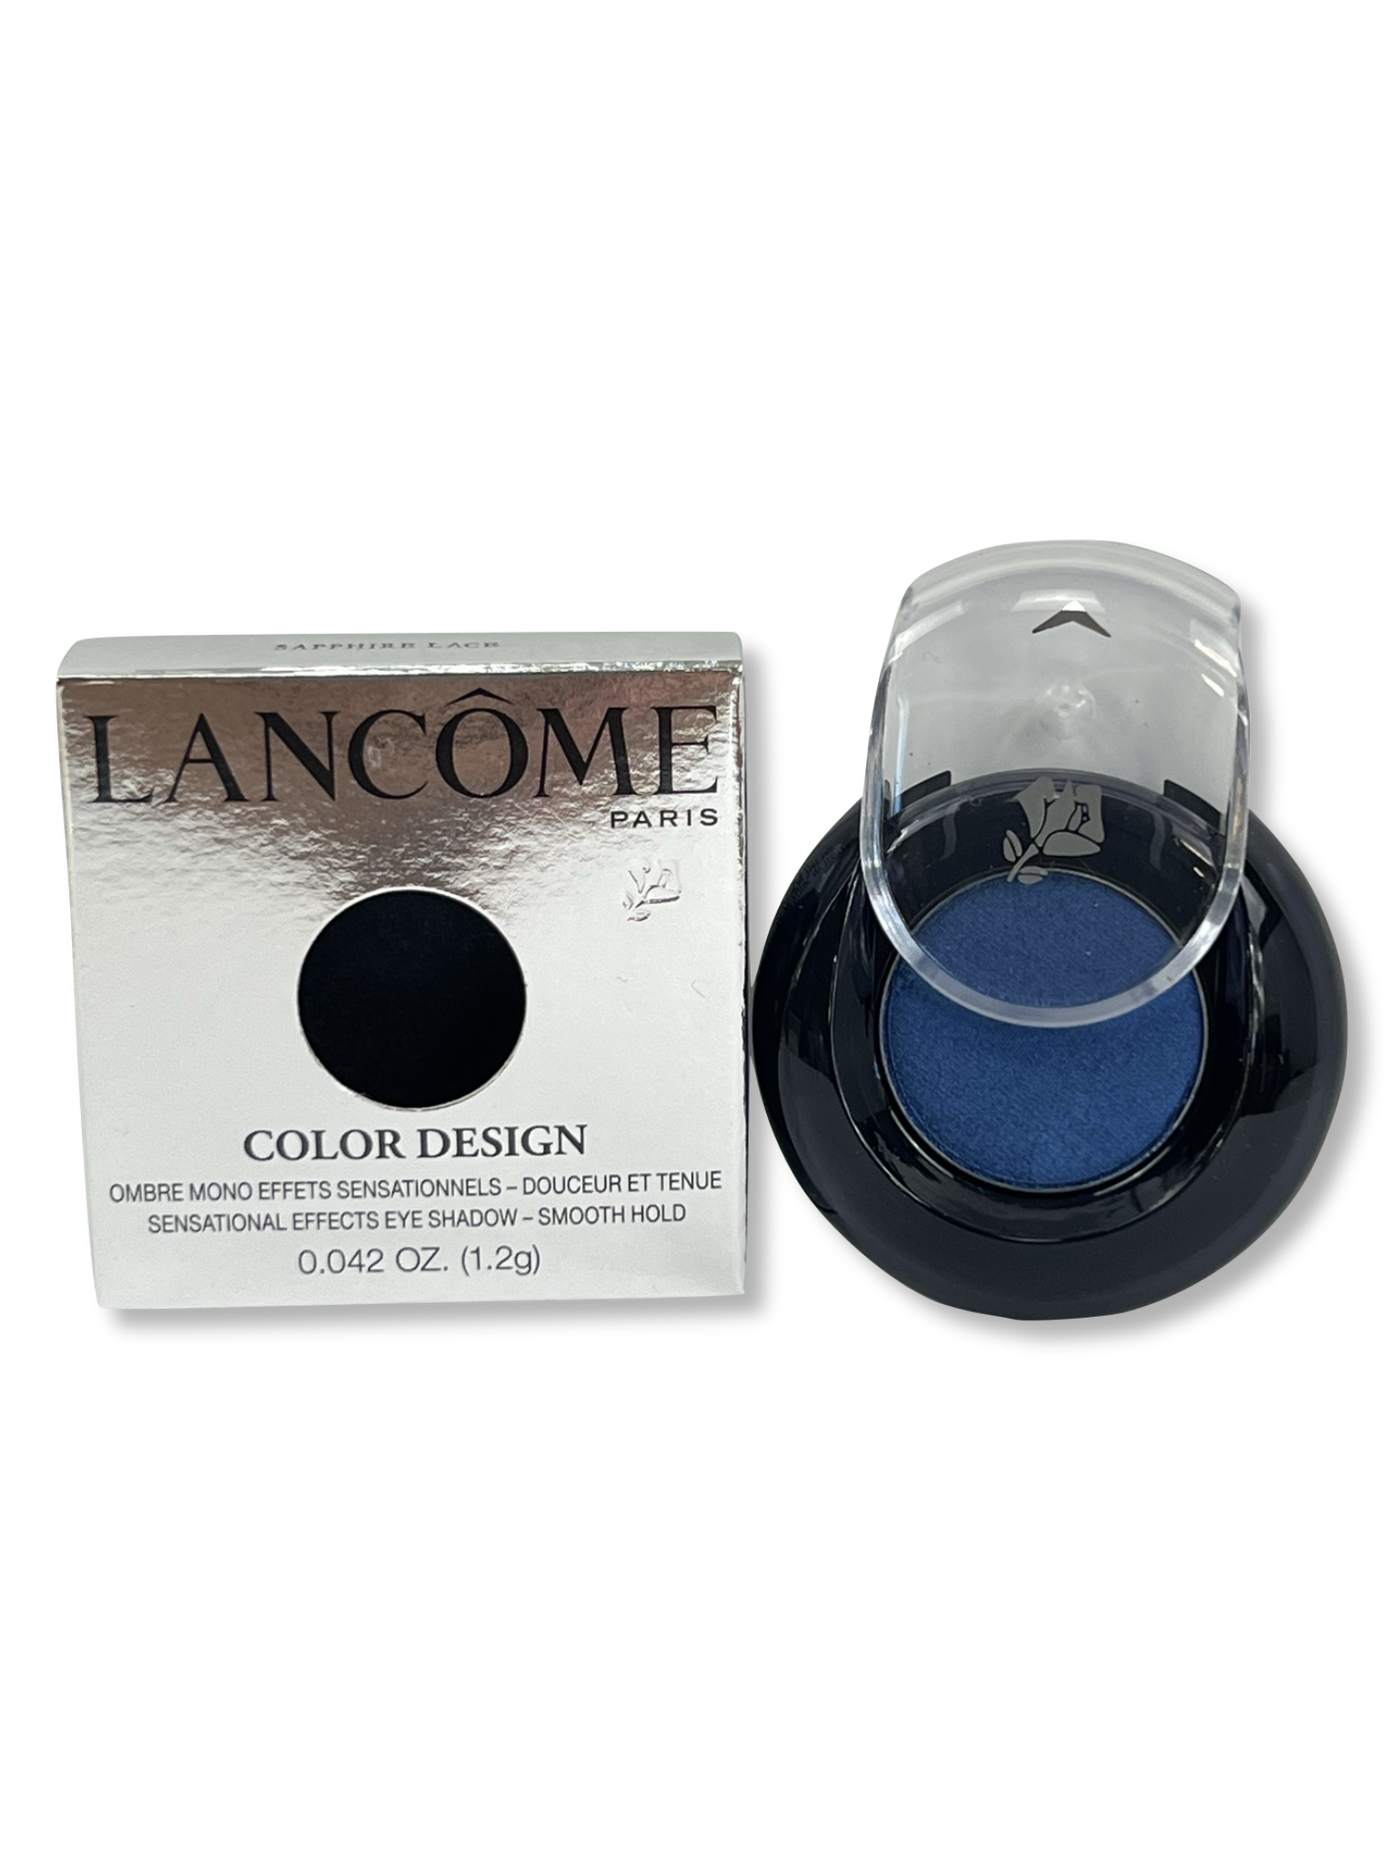 WHOLESALE Lancome Color Design Sensational Effects Eye Shadow, Sapphire Lace